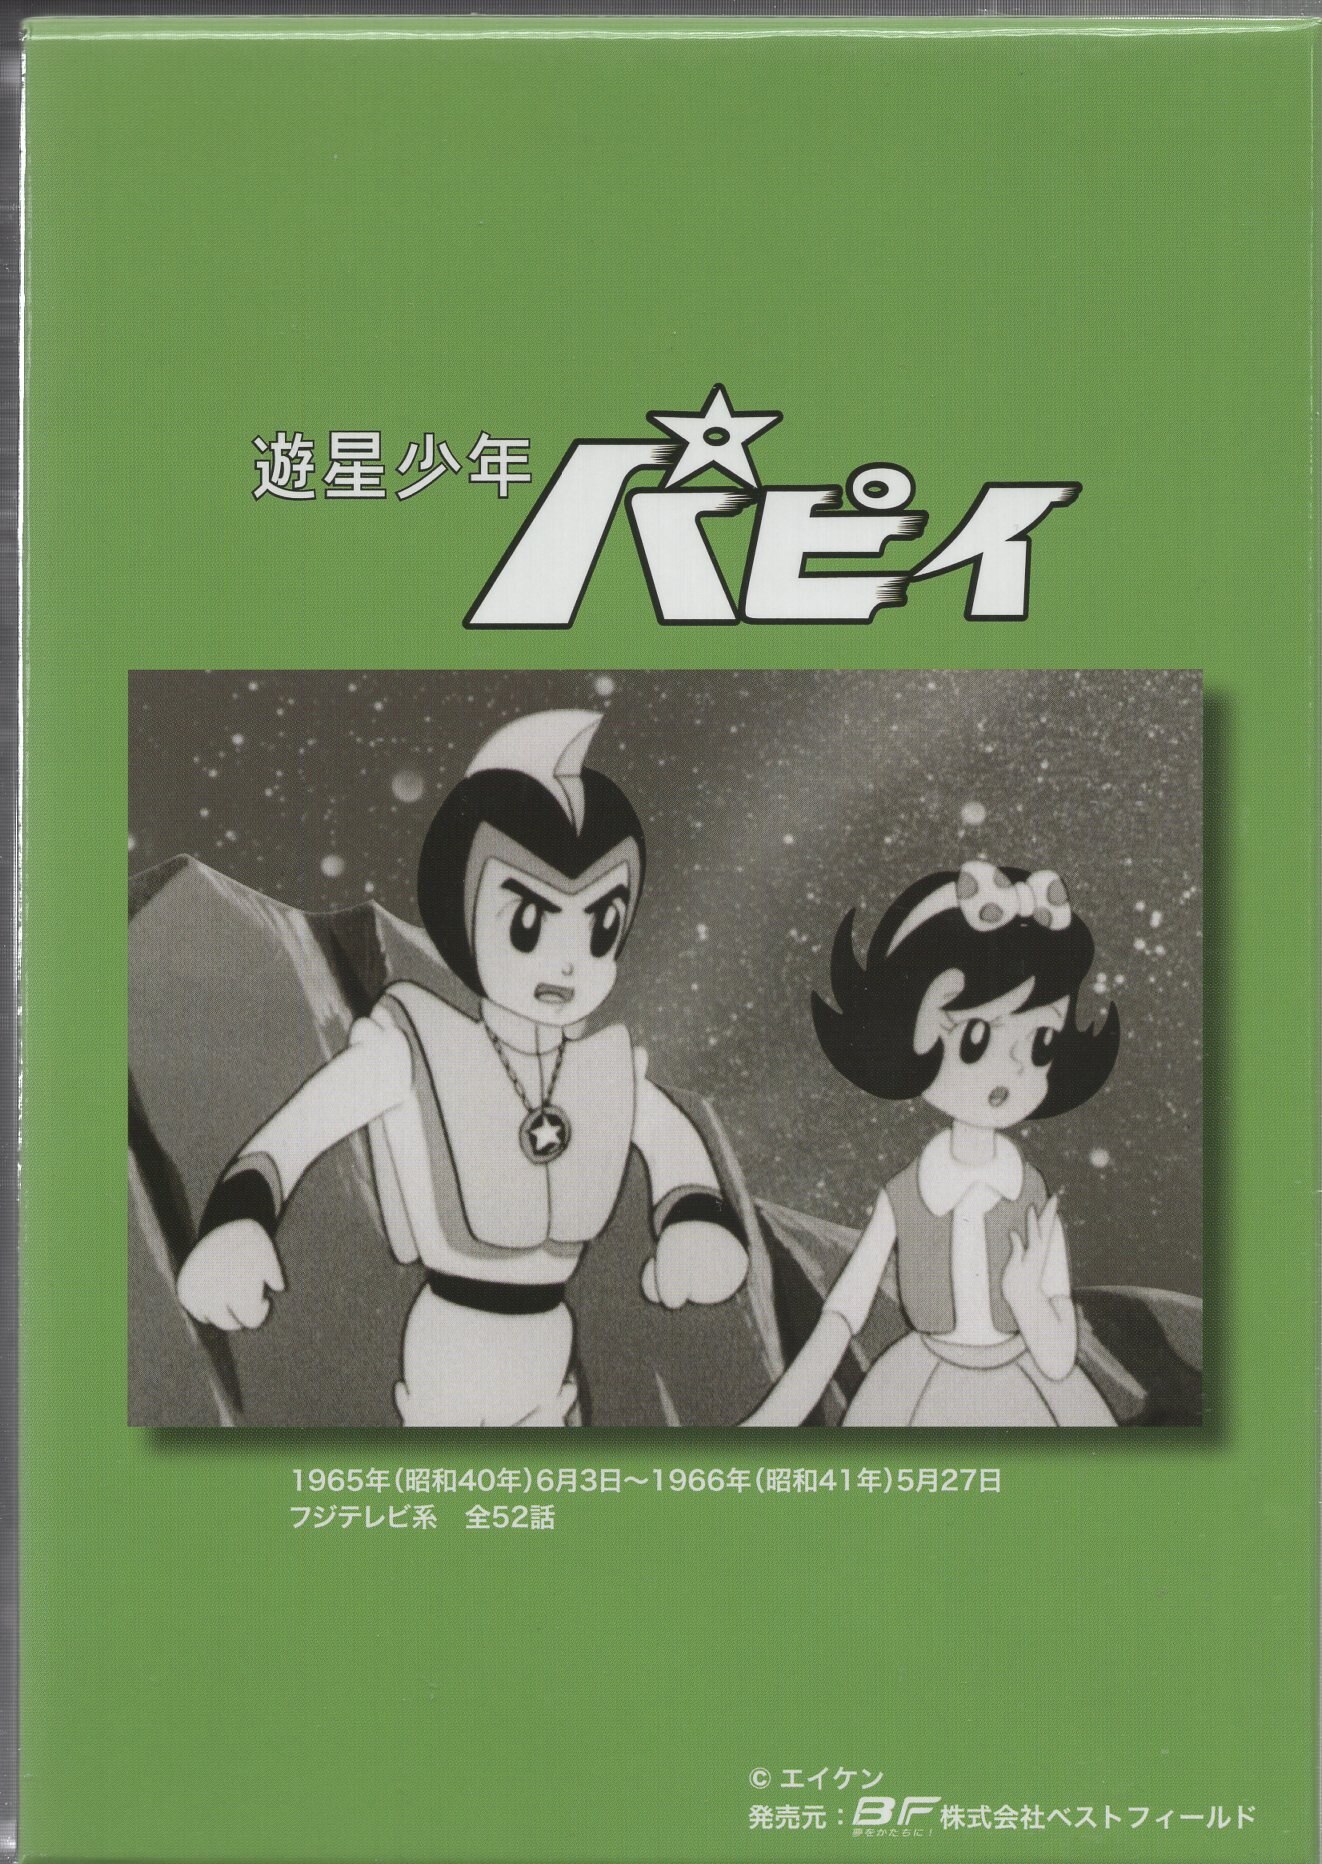 遊星少年パピイ DVD-BOX HDリマスター版【想い出のアニメライブラリー